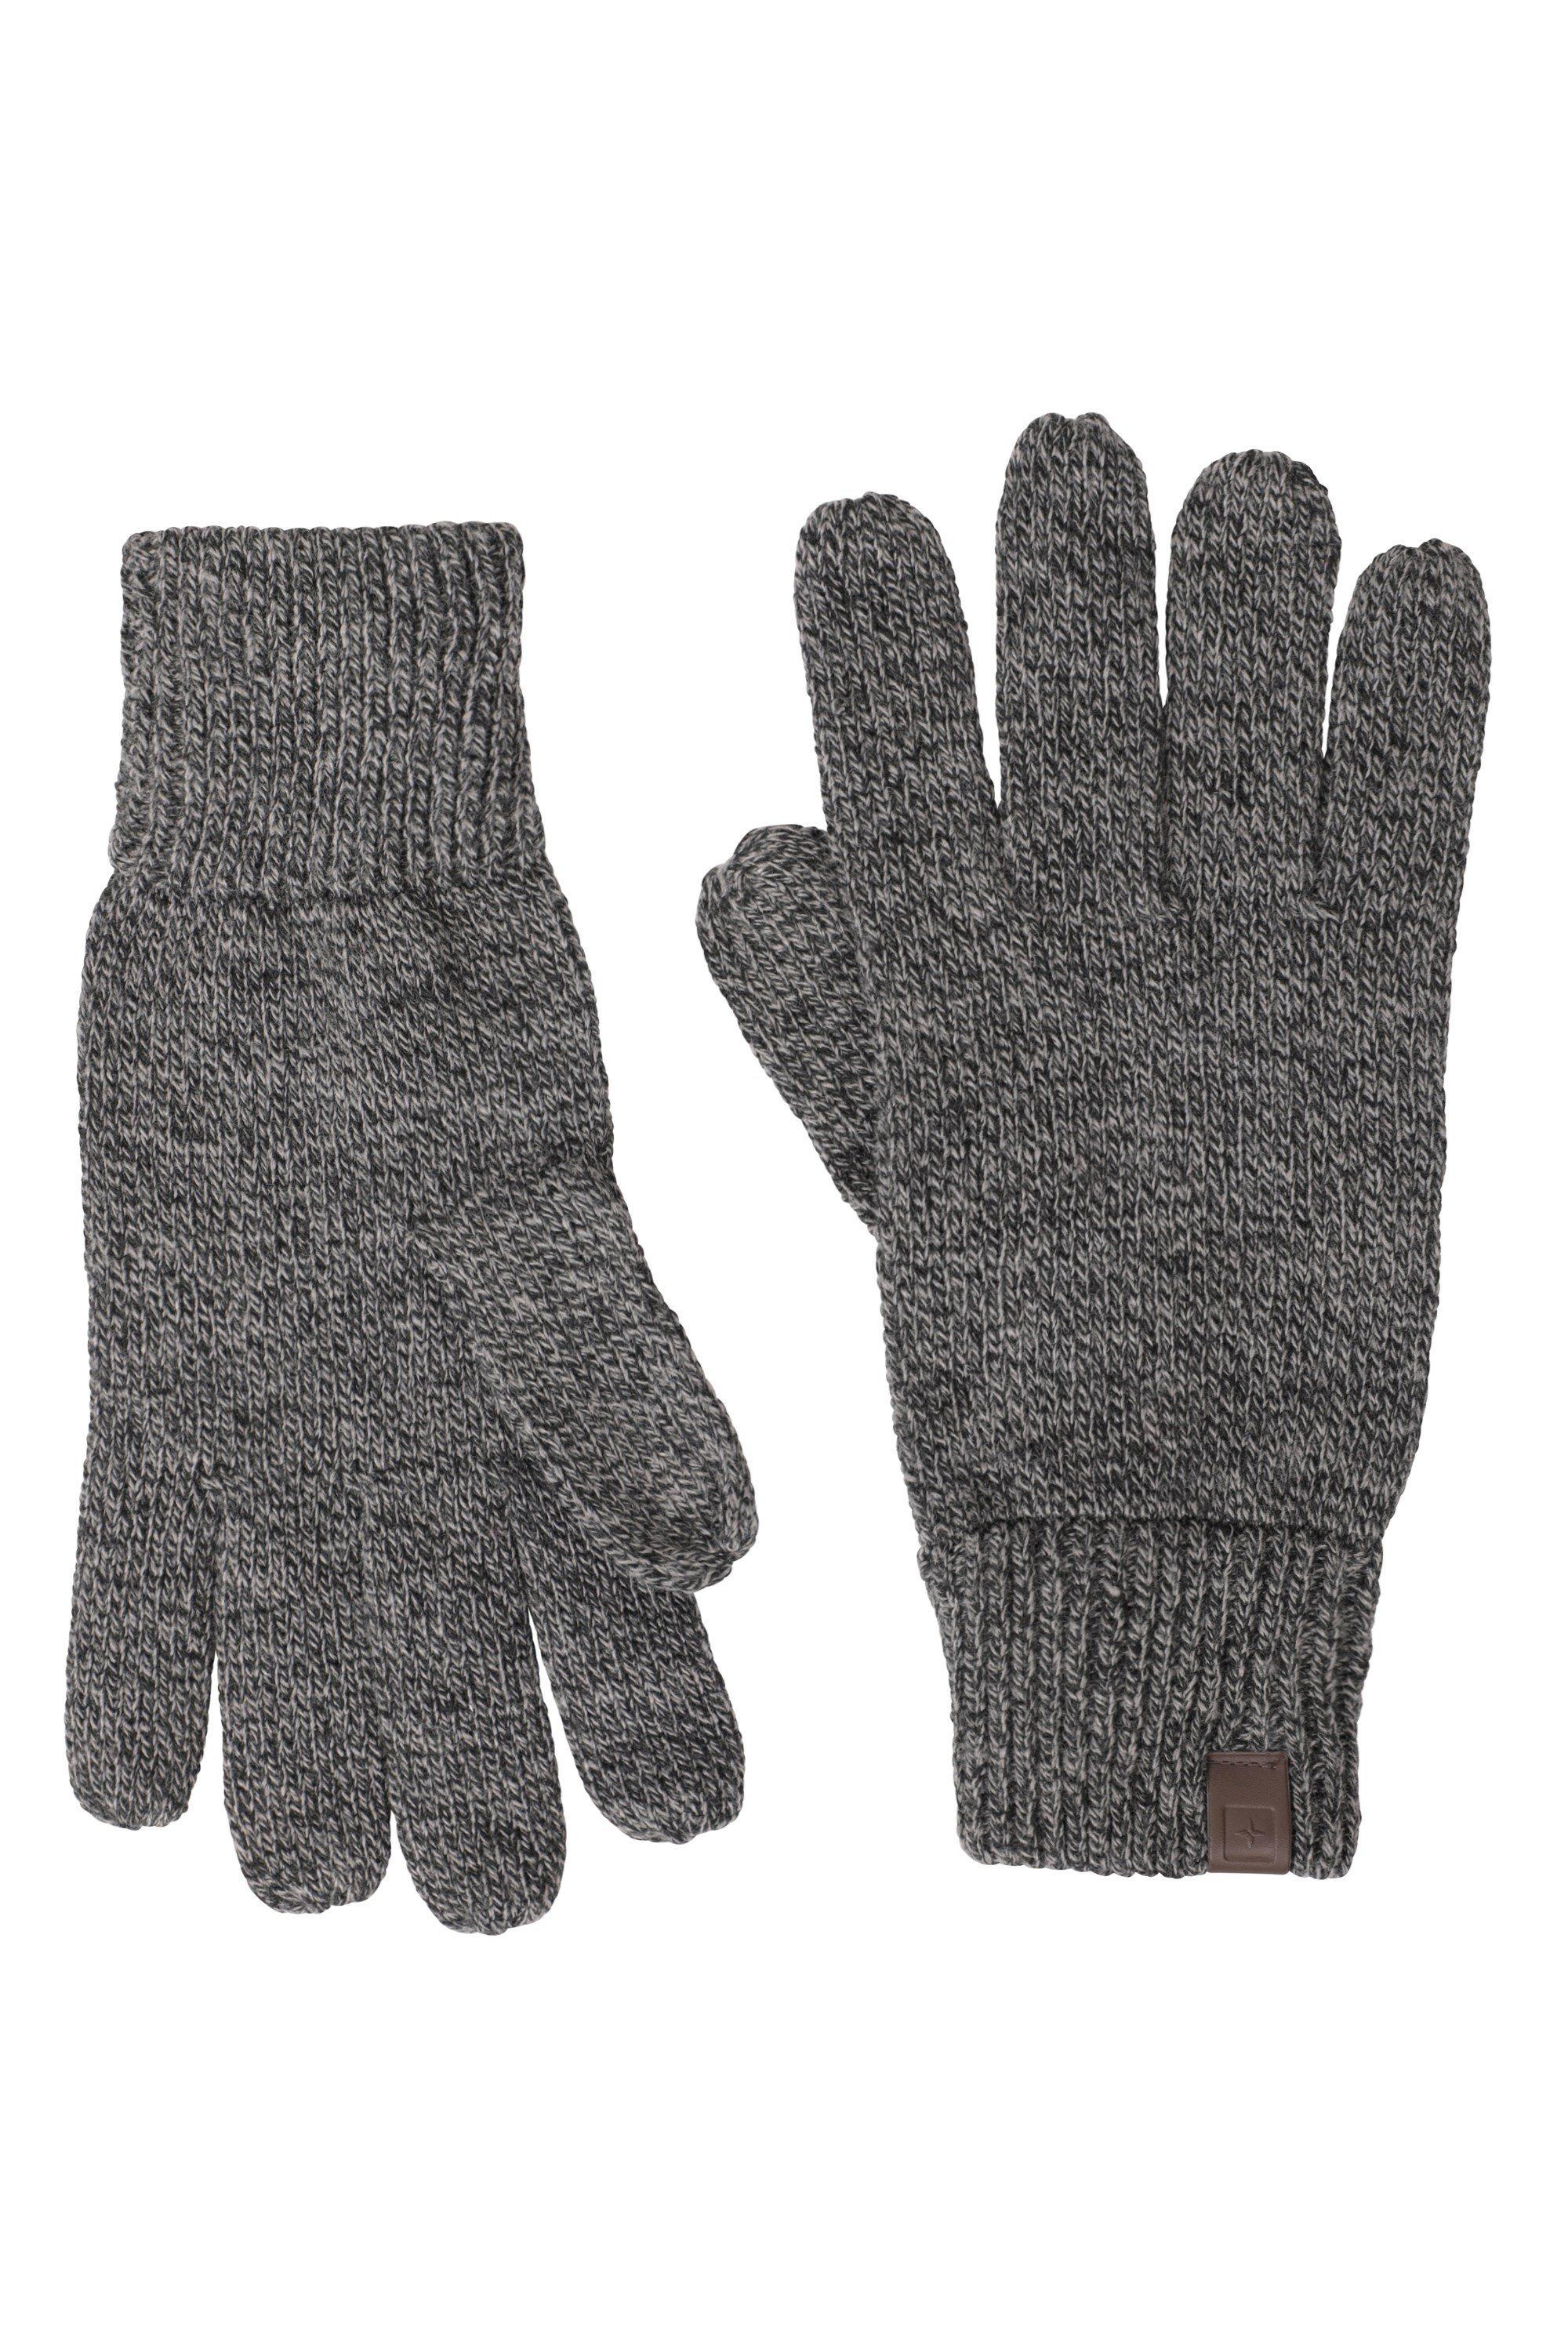 Вязаные перчатки с компасом, теплые зимние перчатки на каждый день Mountain Warehouse, черный единорог перчатка трикотажные зимние теплые мягкие перчатки mountain warehouse фиолетовый